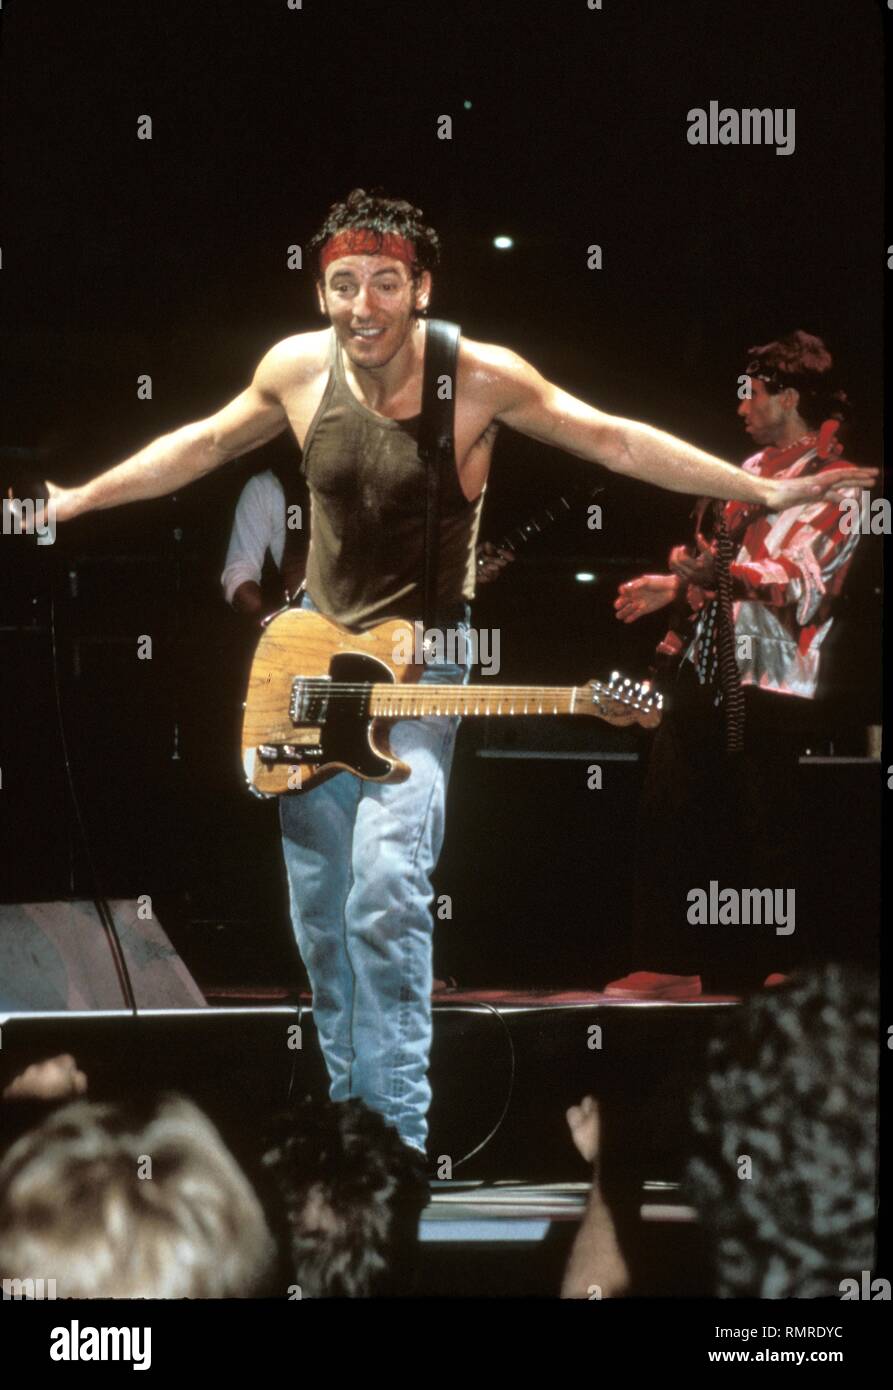 på vegne af rækkevidde Flere SInger, songwriter & guitarist Bruce Springsteen, nicknamed "The Boss", is  shown performing on stage during a "live" concert appearance Stock Photo -  Alamy